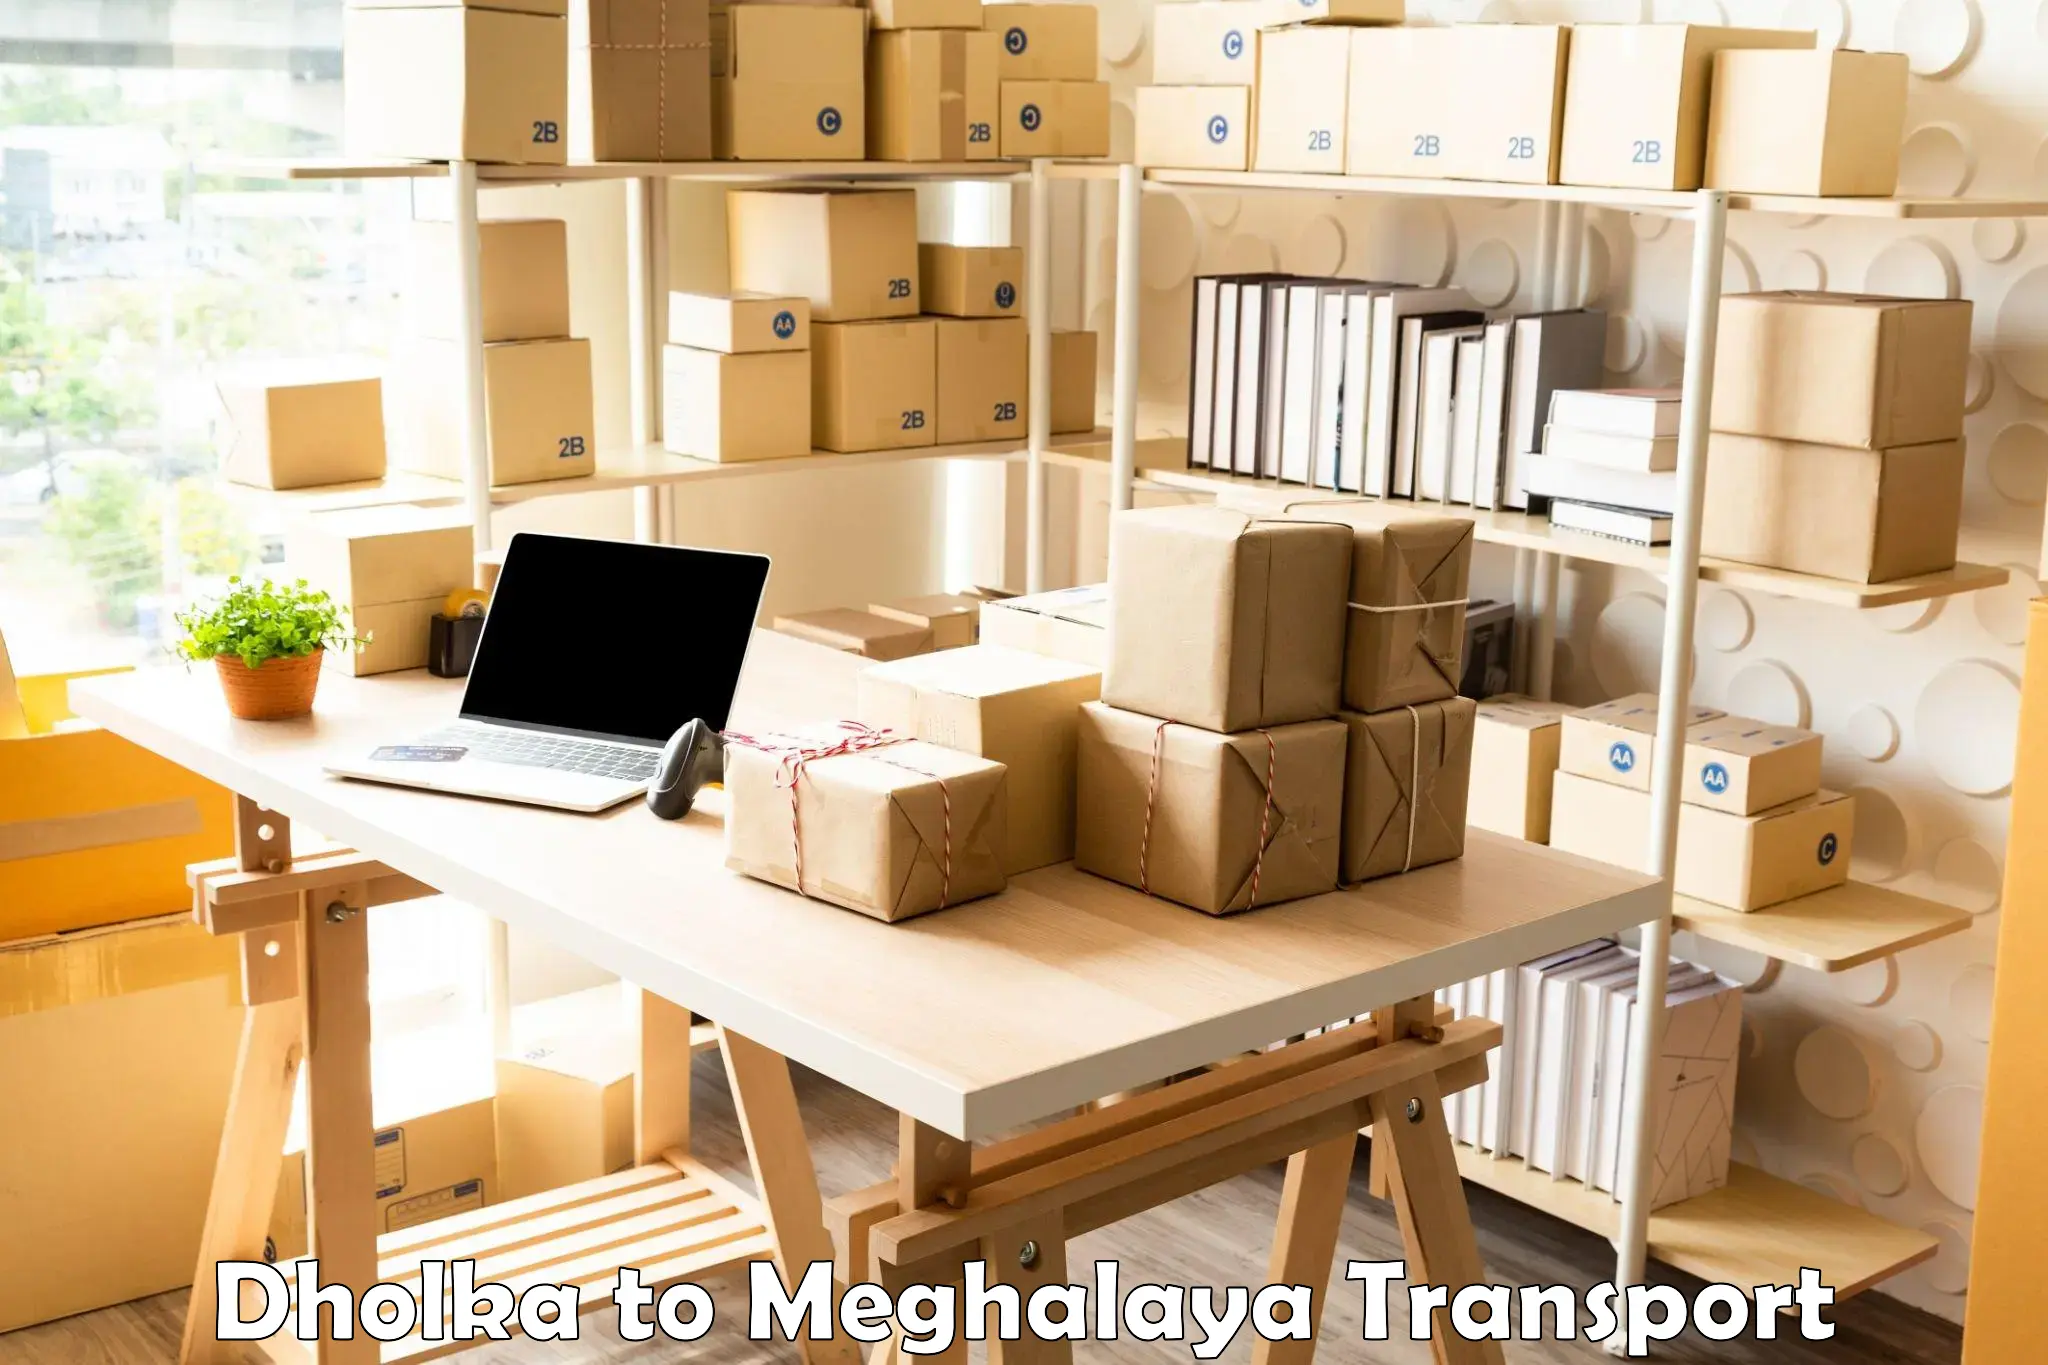 Nearest transport service Dholka to Meghalaya